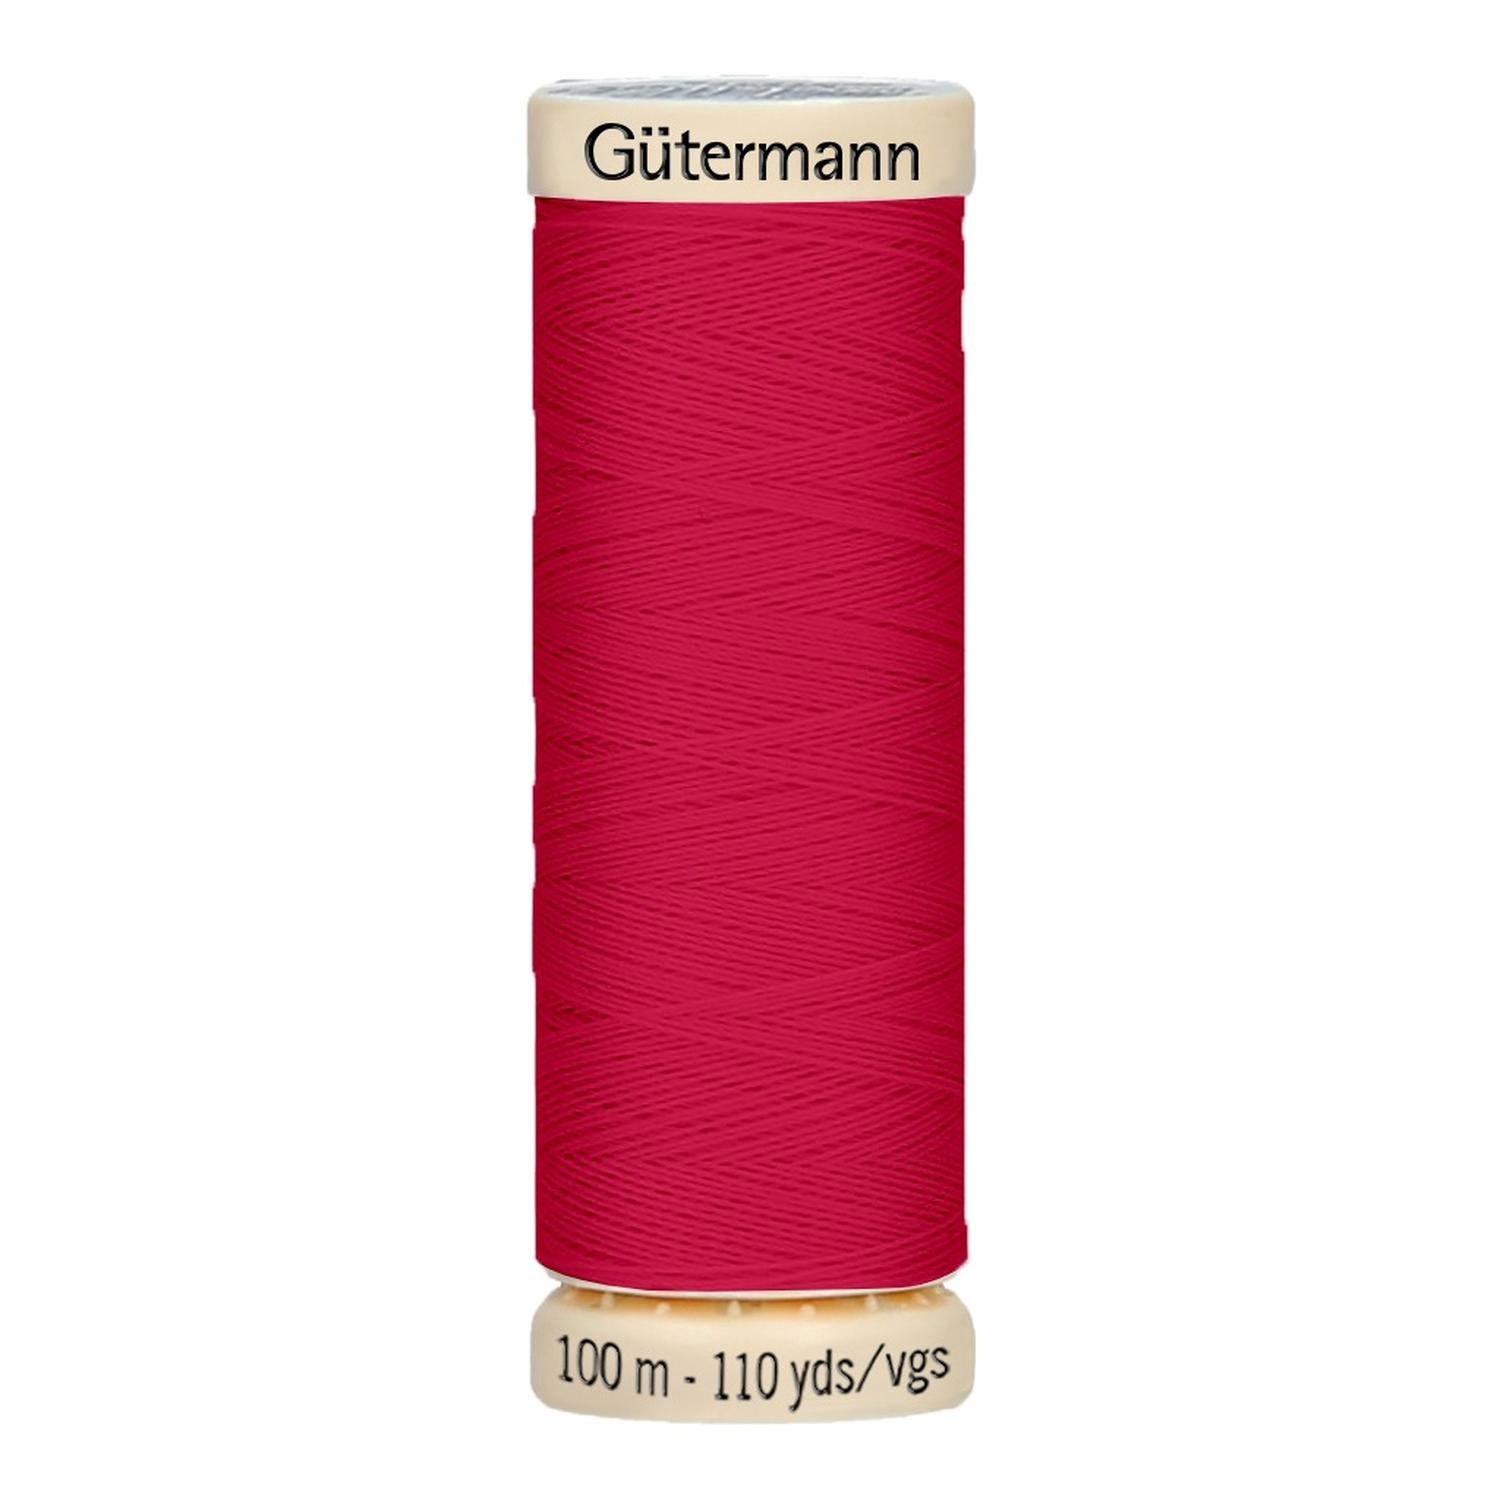 Hilo Gutermann Mara 120, para Costura a Mano y Máquina de coser, Color  Caqui, cono de 5000 mts. Poliéster